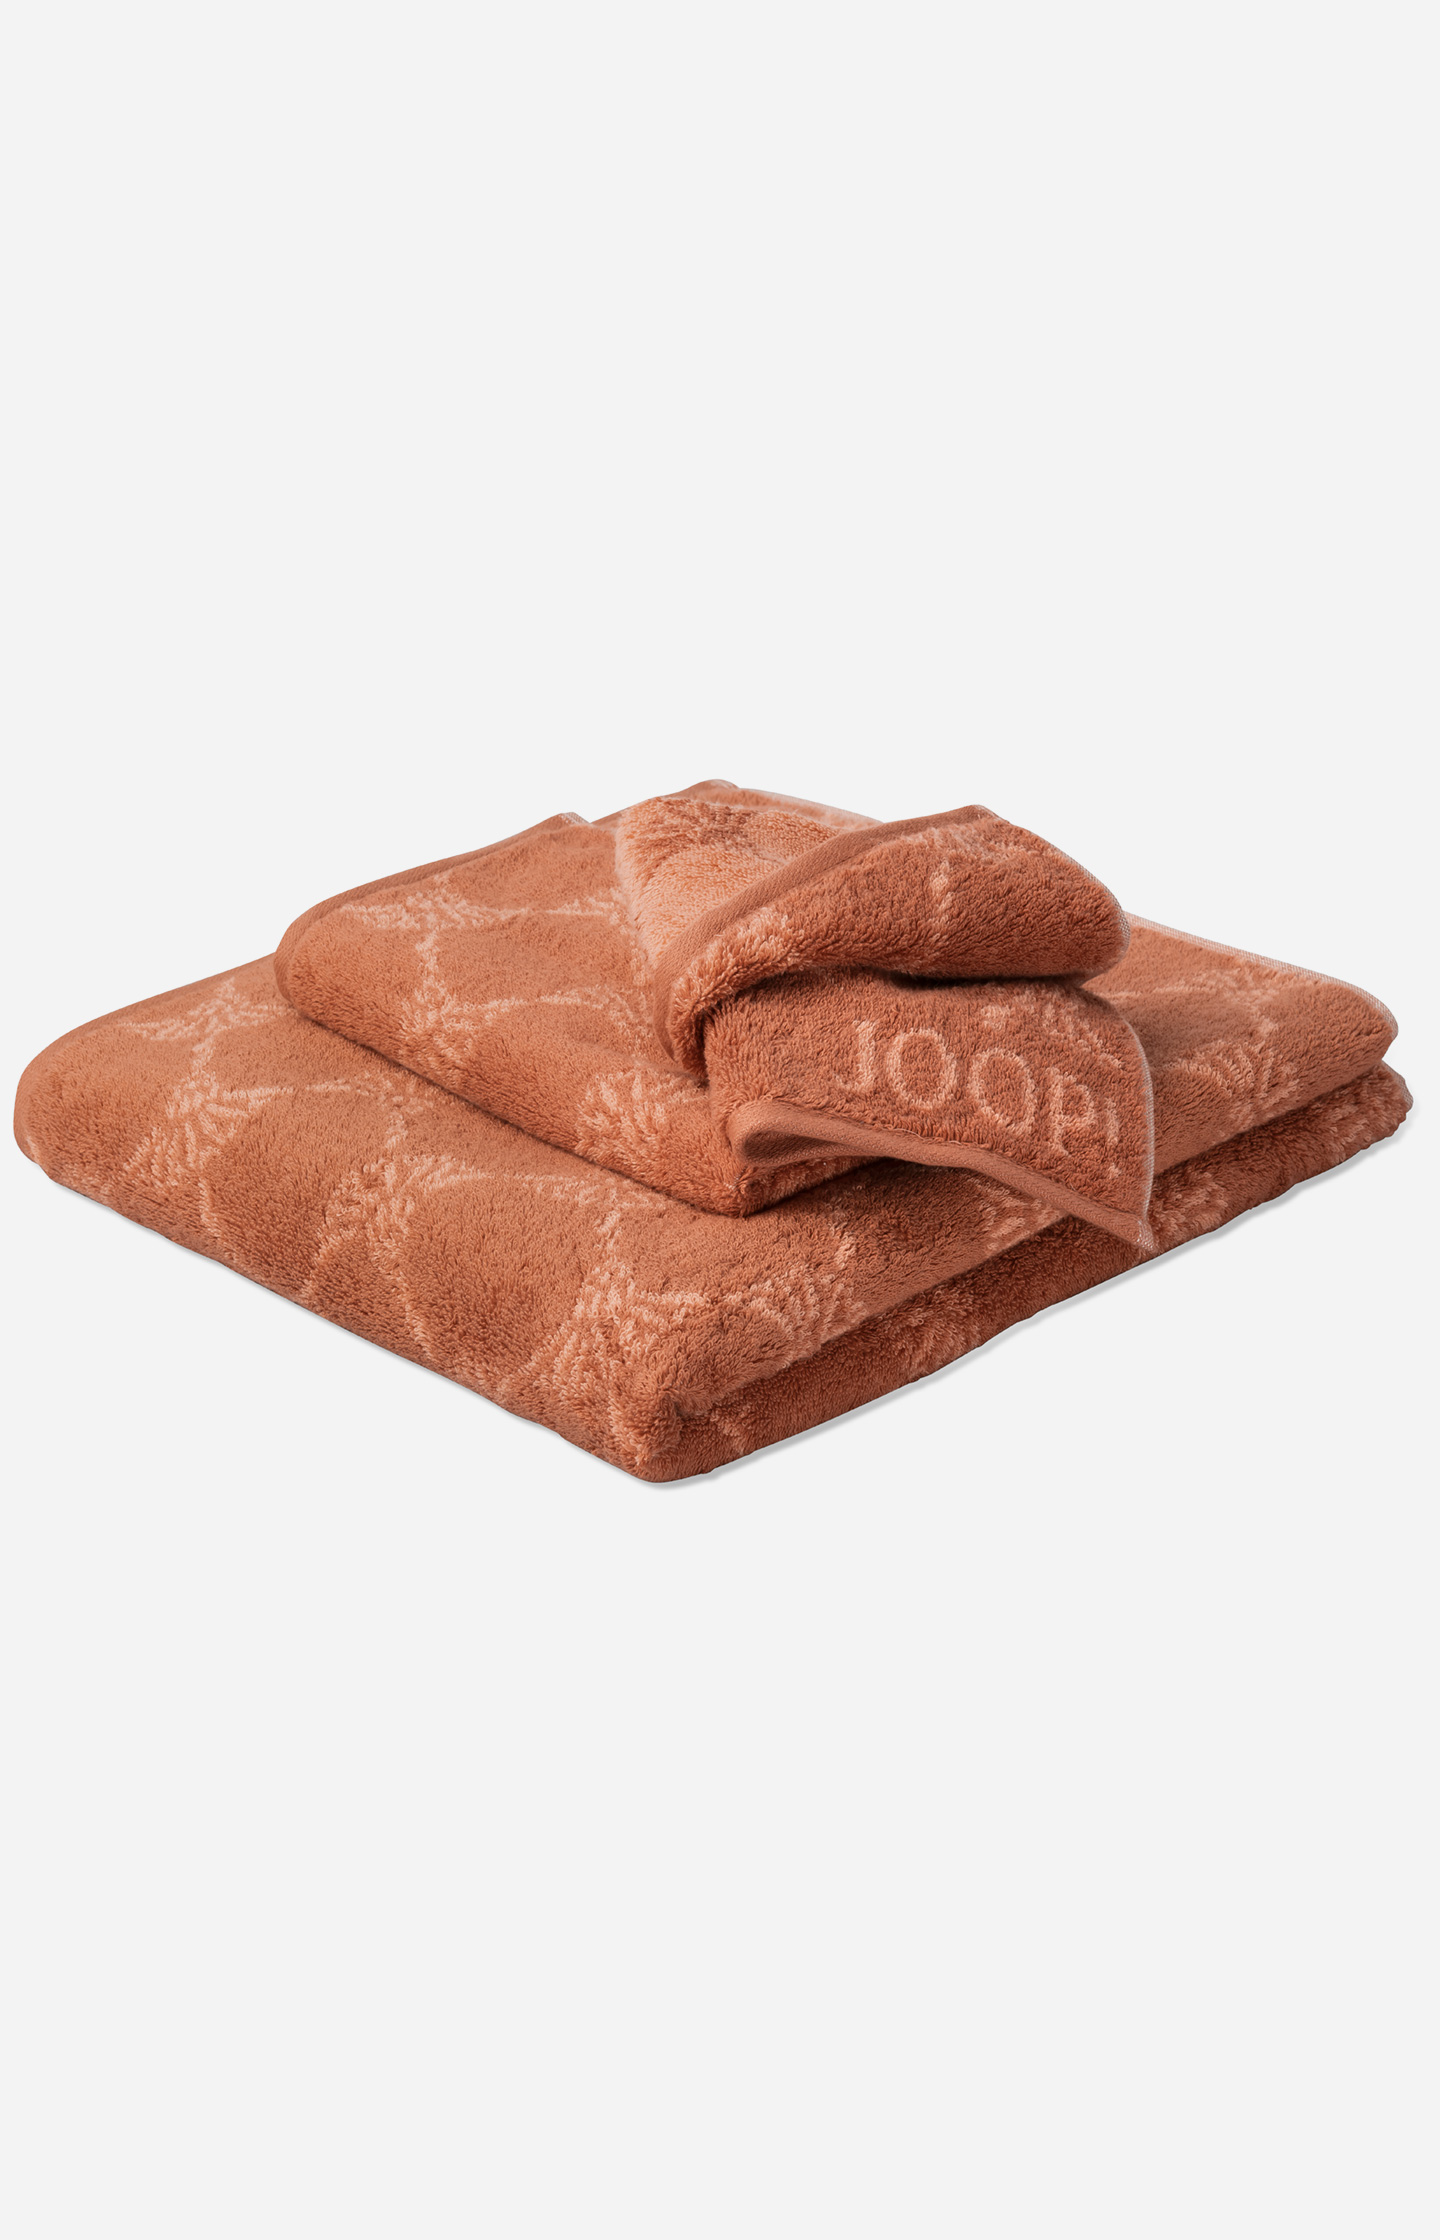 JOOP! CLASSIC CORNFLOWER face cloth in copper - in the JOOP! Online Shop